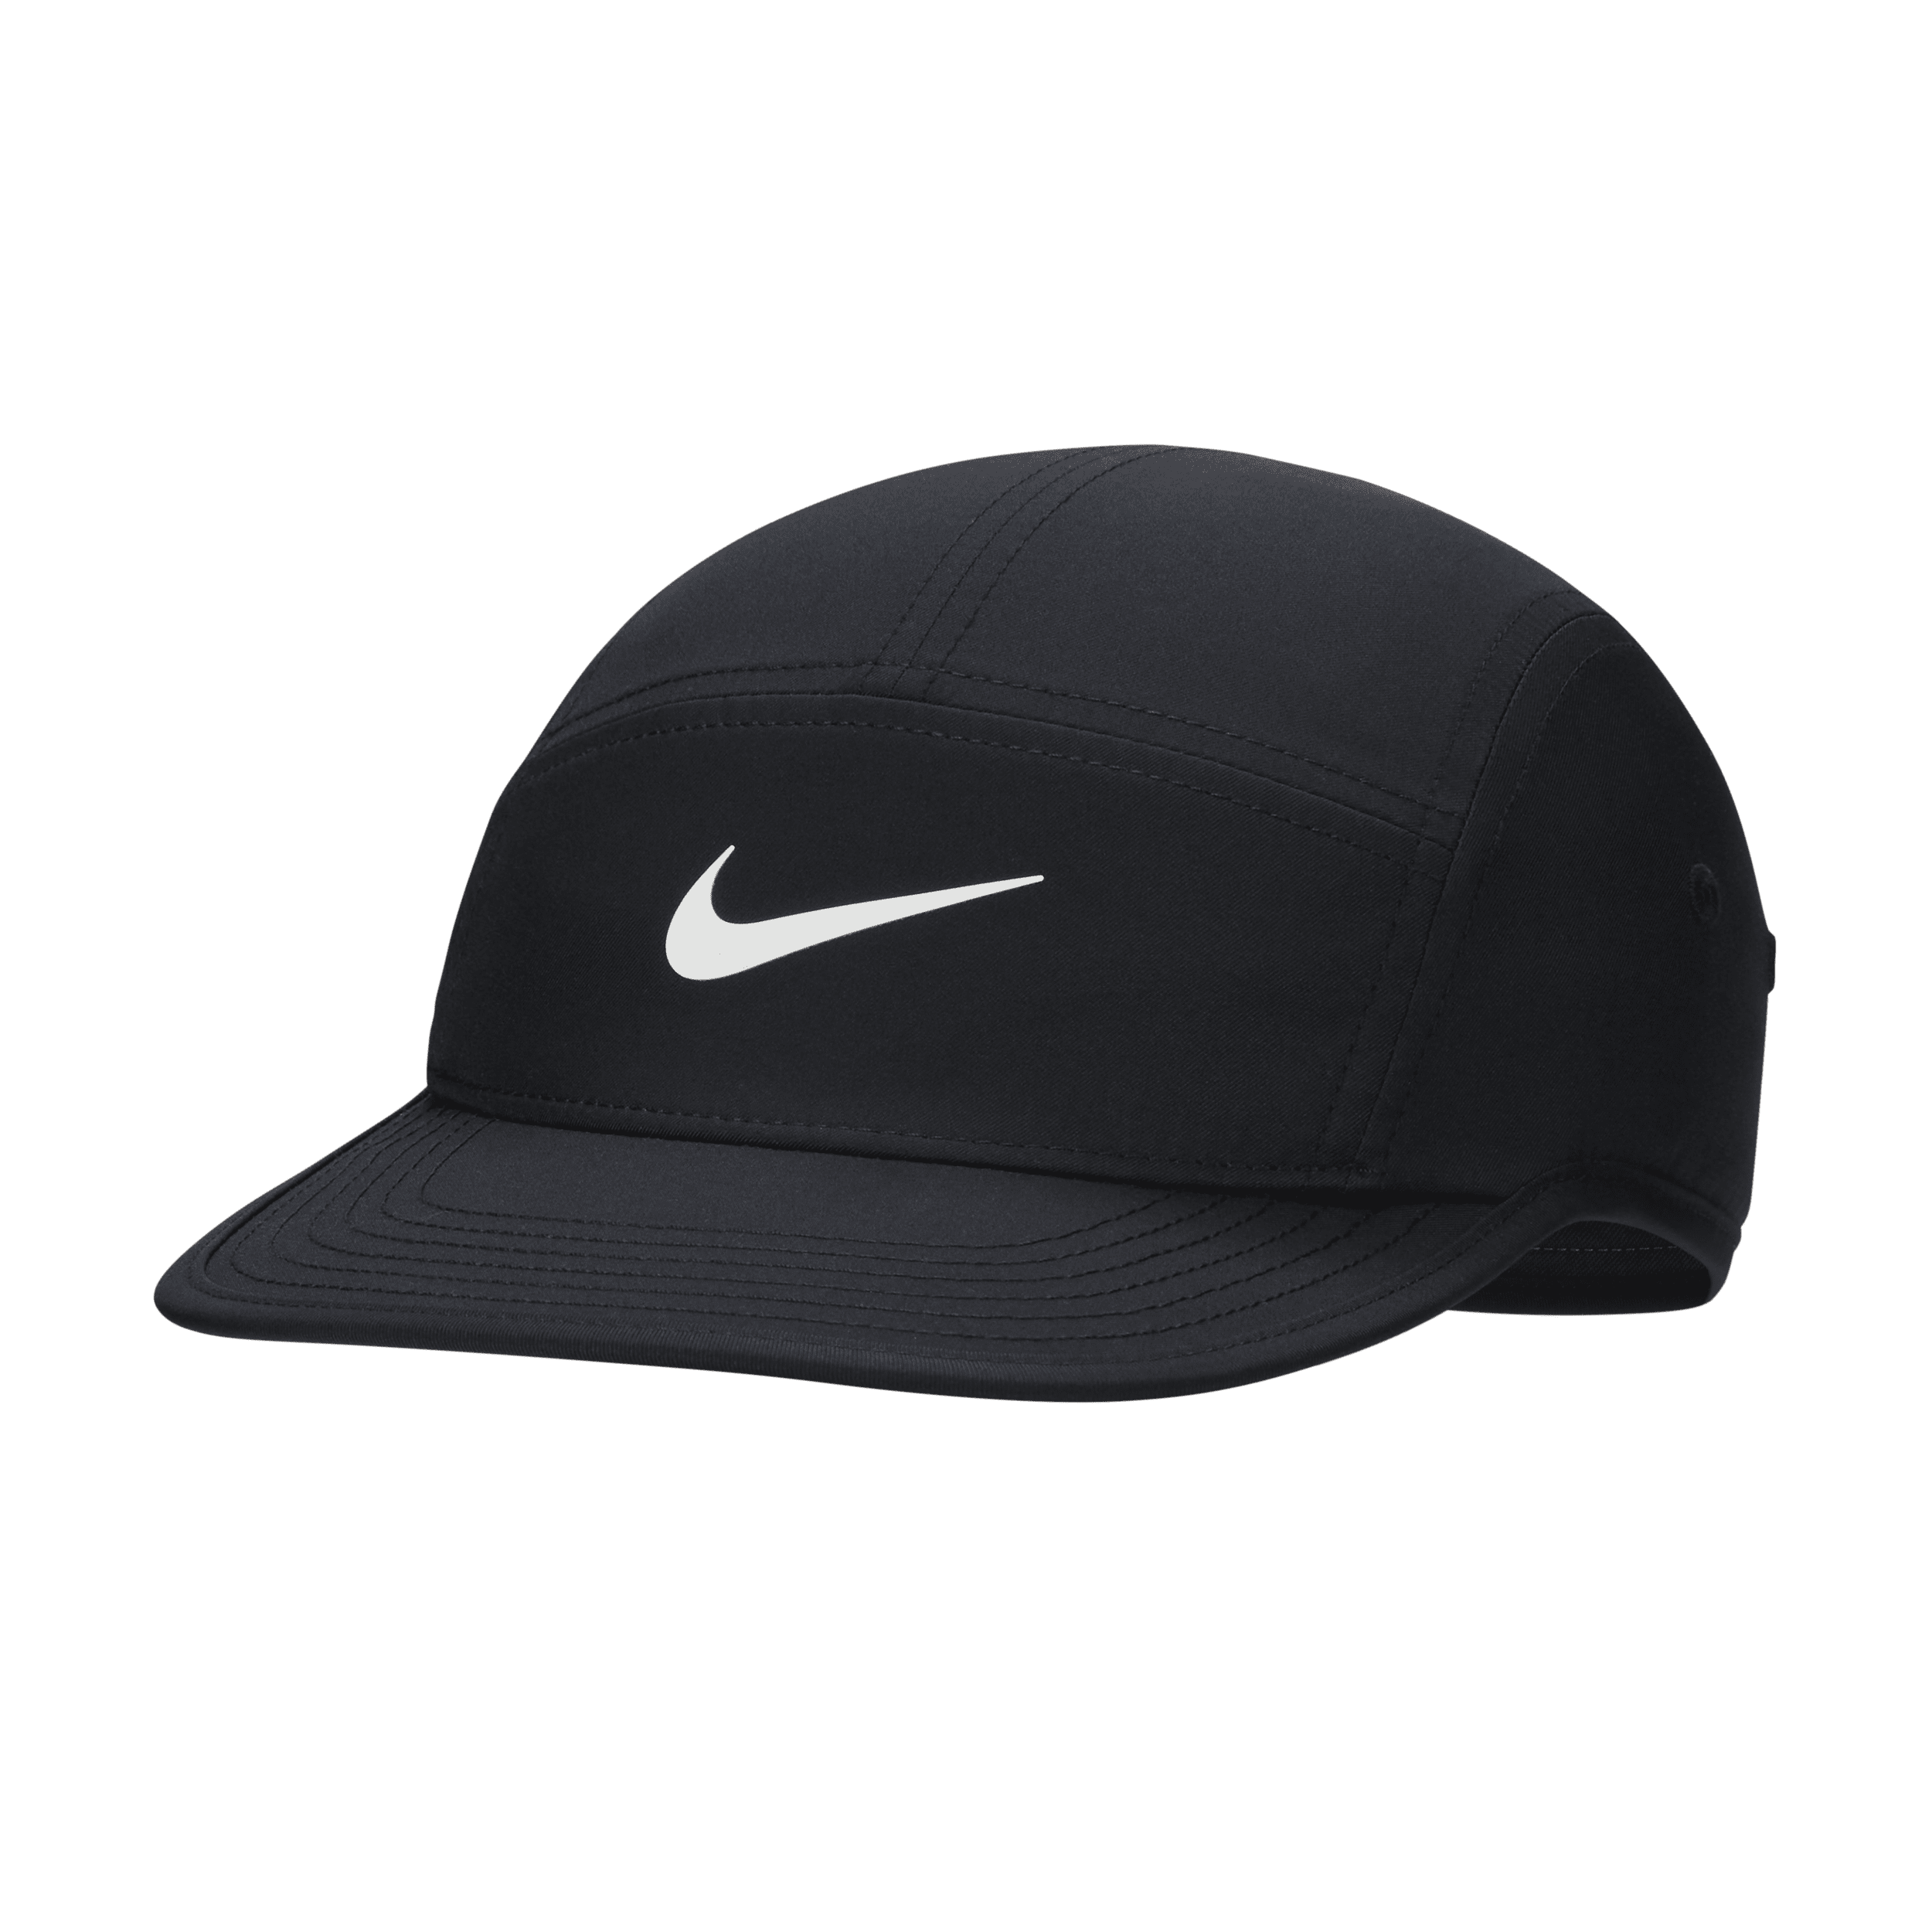 Ustruktureret Nike Dri-FIT Fly-Swoosh-kasket - sort